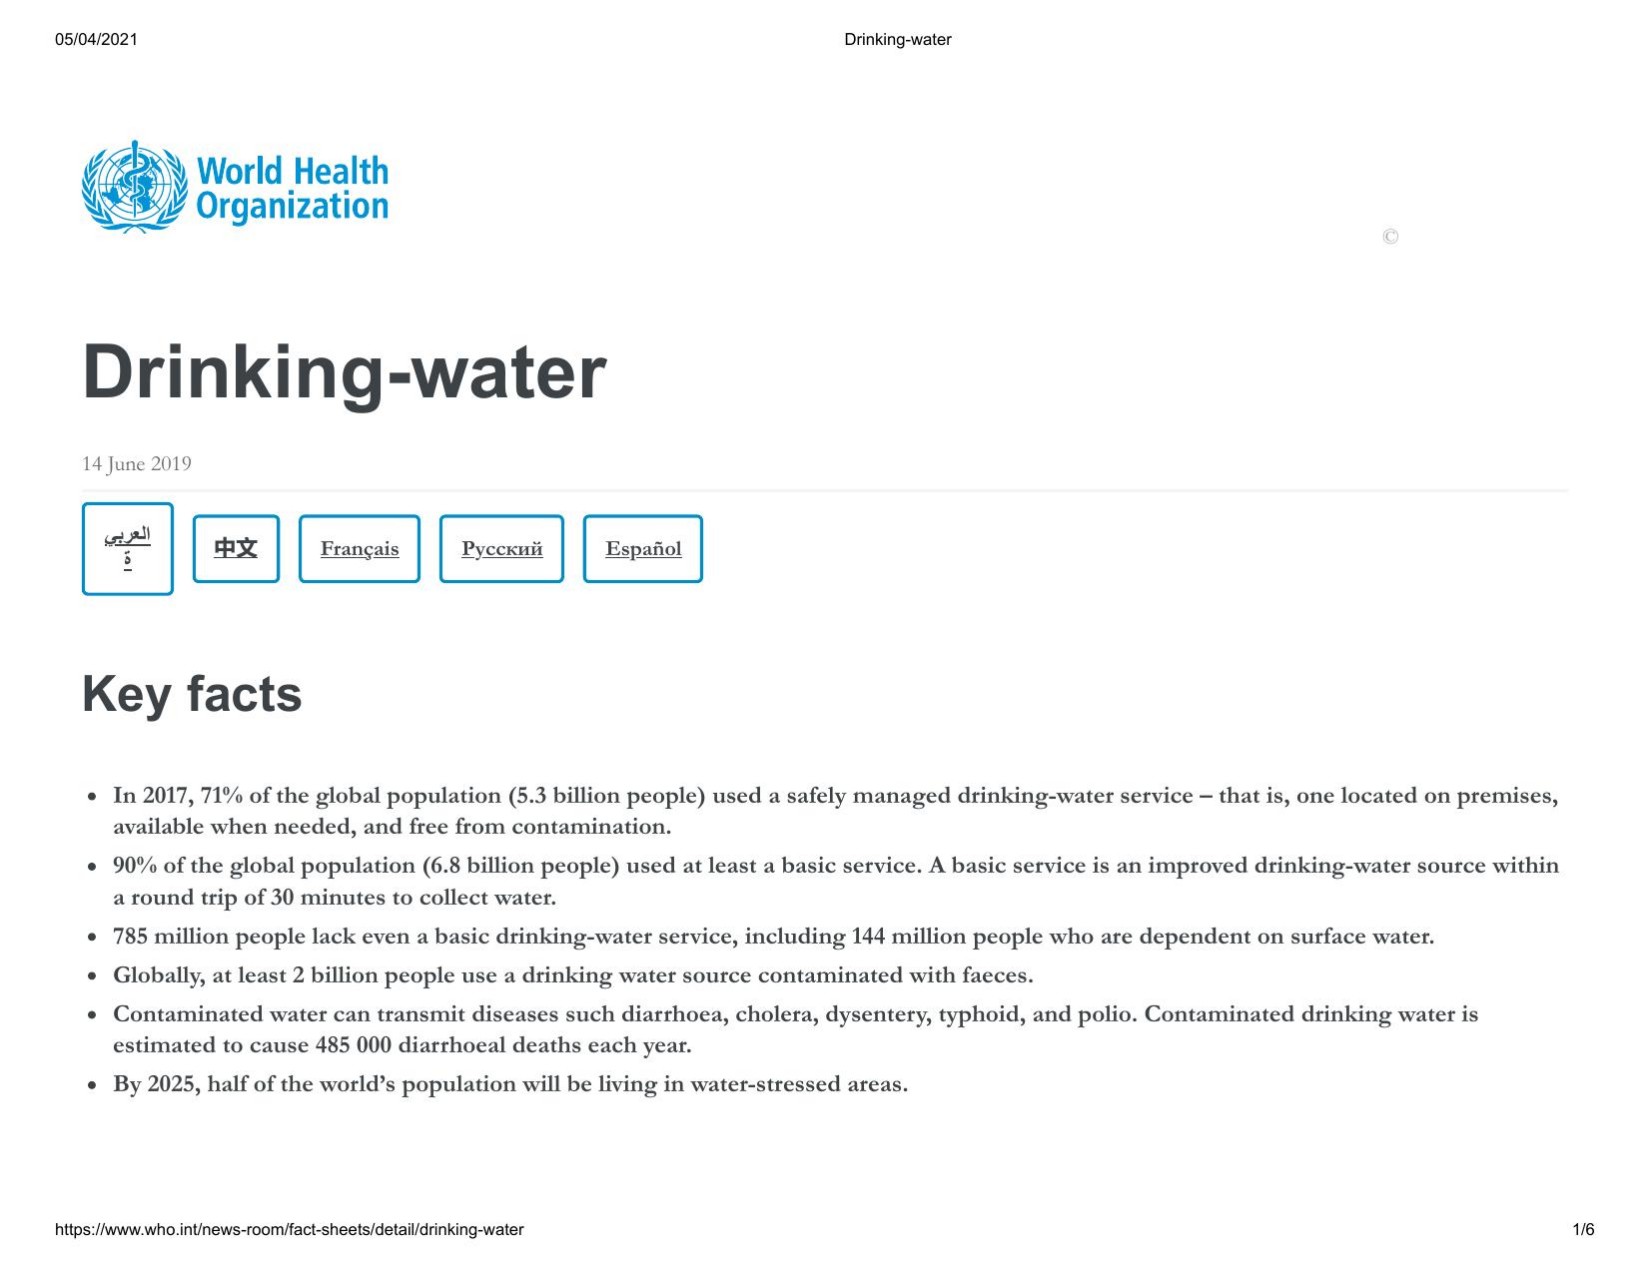 Fact Sheet on Drinking-water